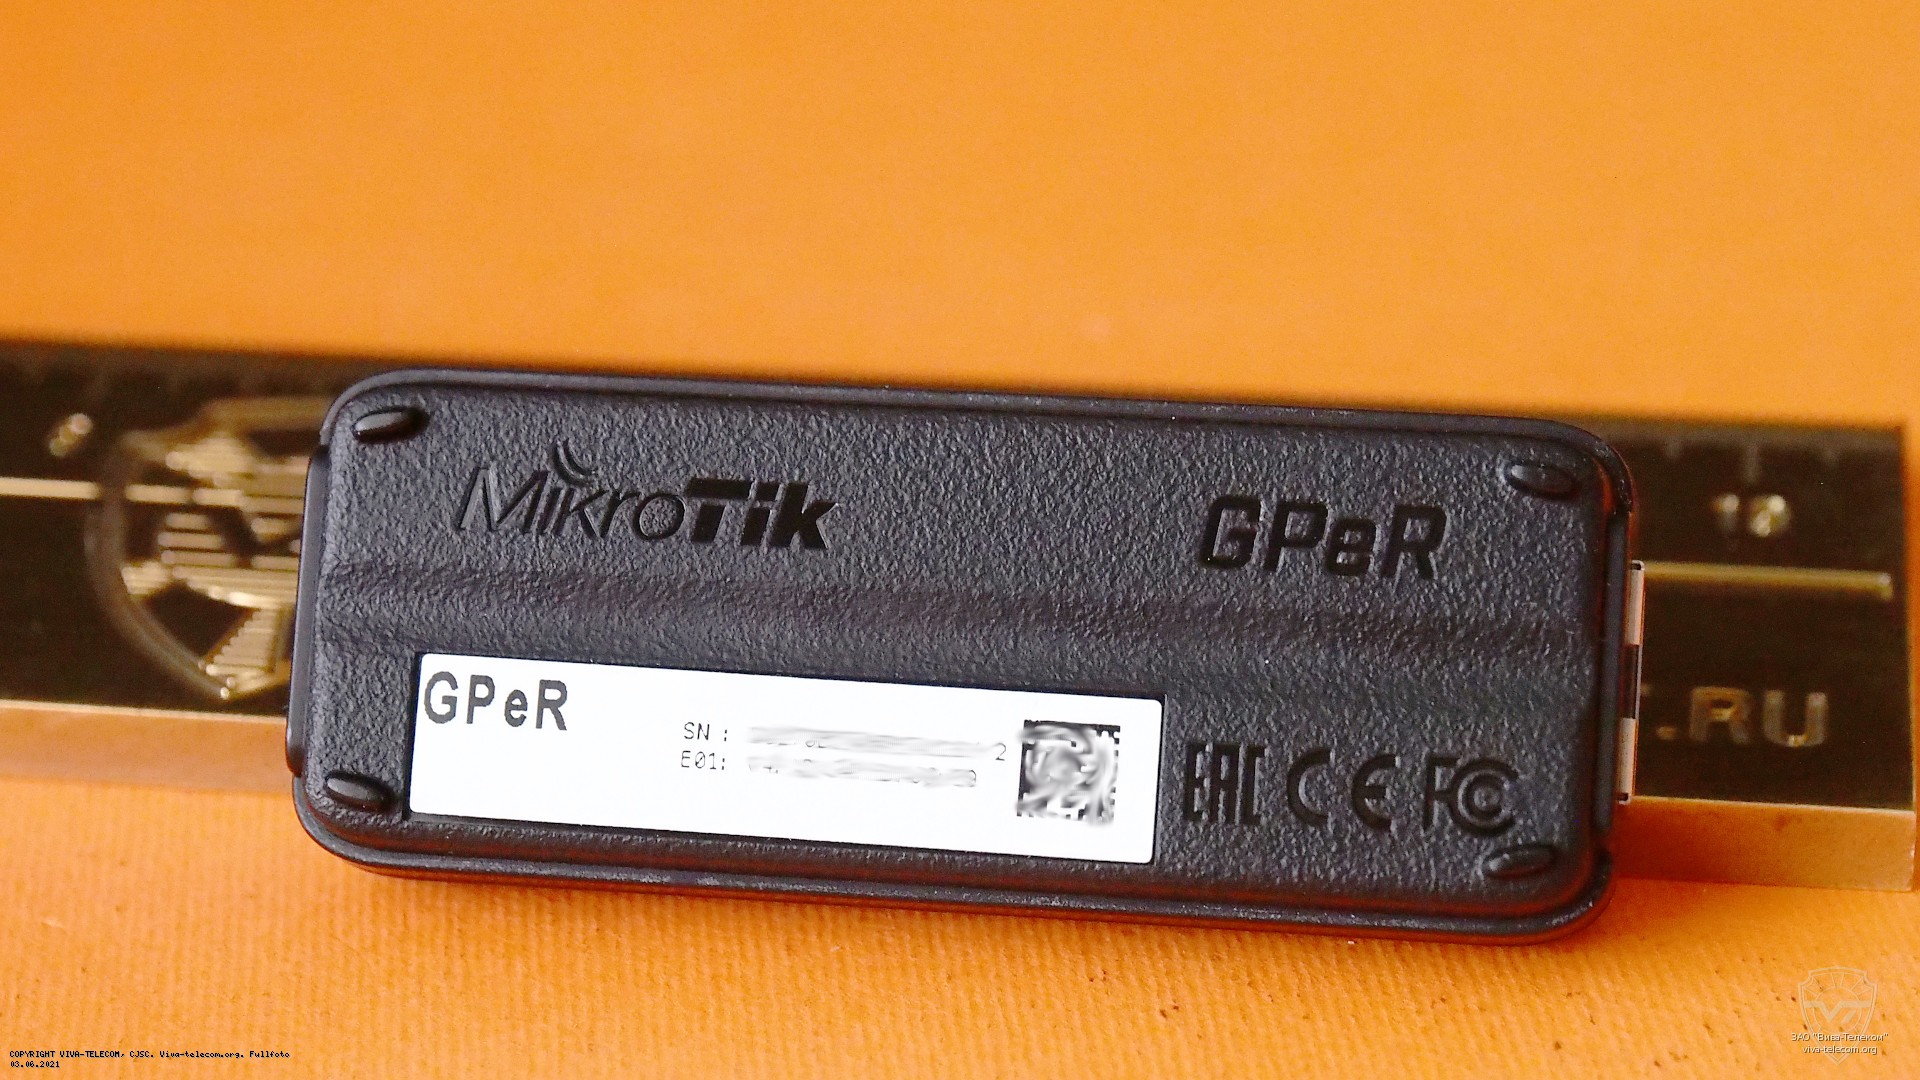    Mikrotik GPeR